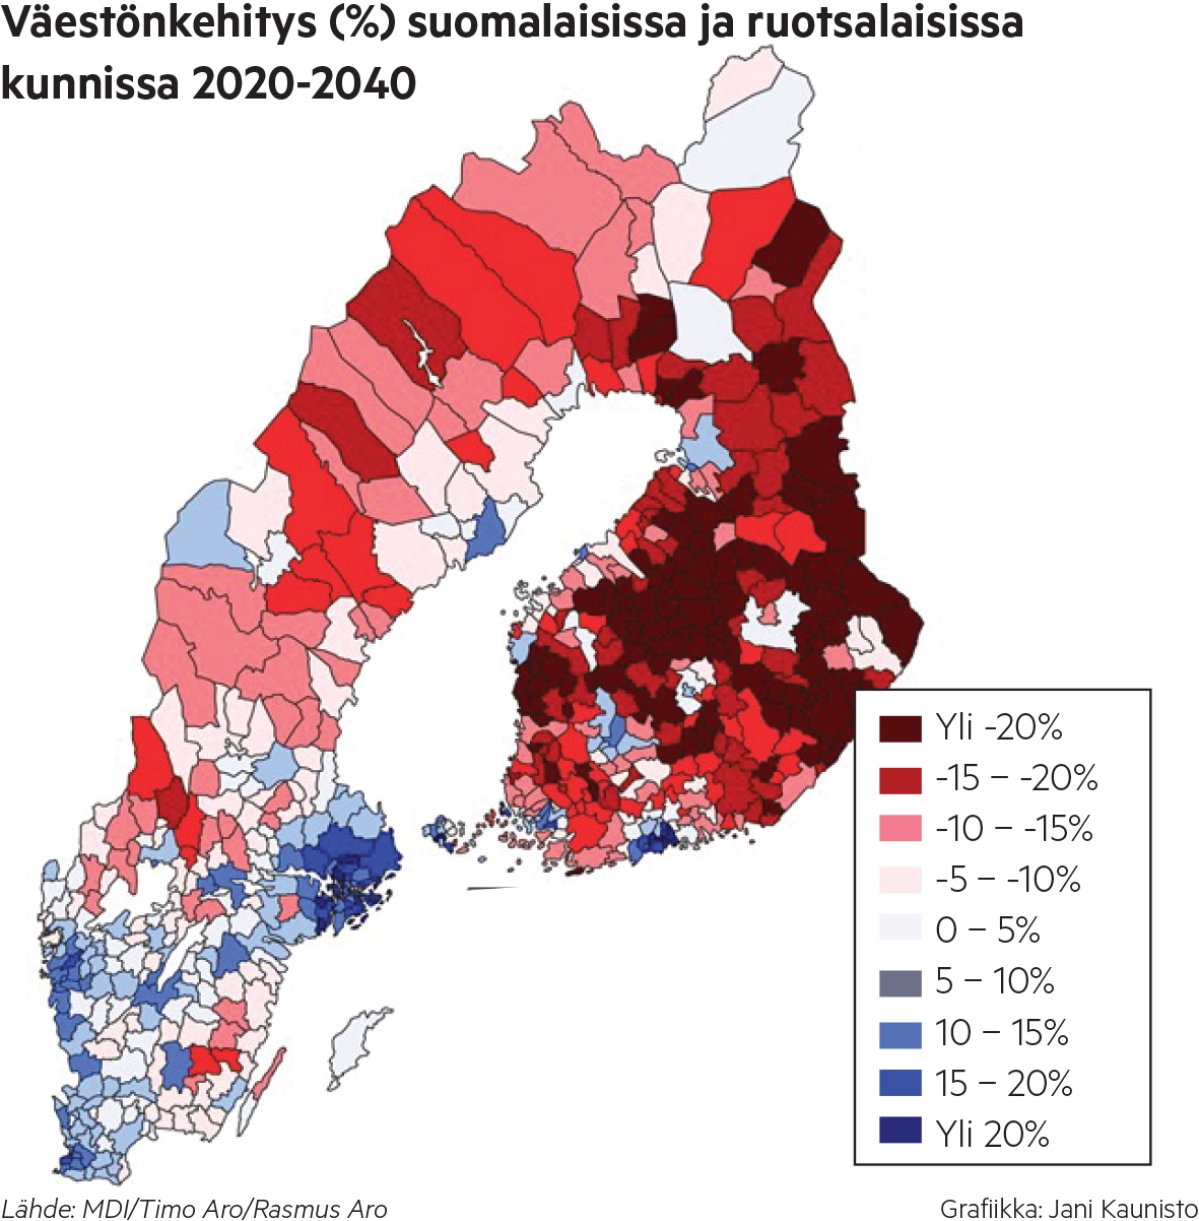 "Hukkaamme aikaa, kun kiistelemme tunneperäisistä asioista" – Suomen ja Ruotsin väestöennusteiden jyrkkään eroon on yksi muita selvempi syy